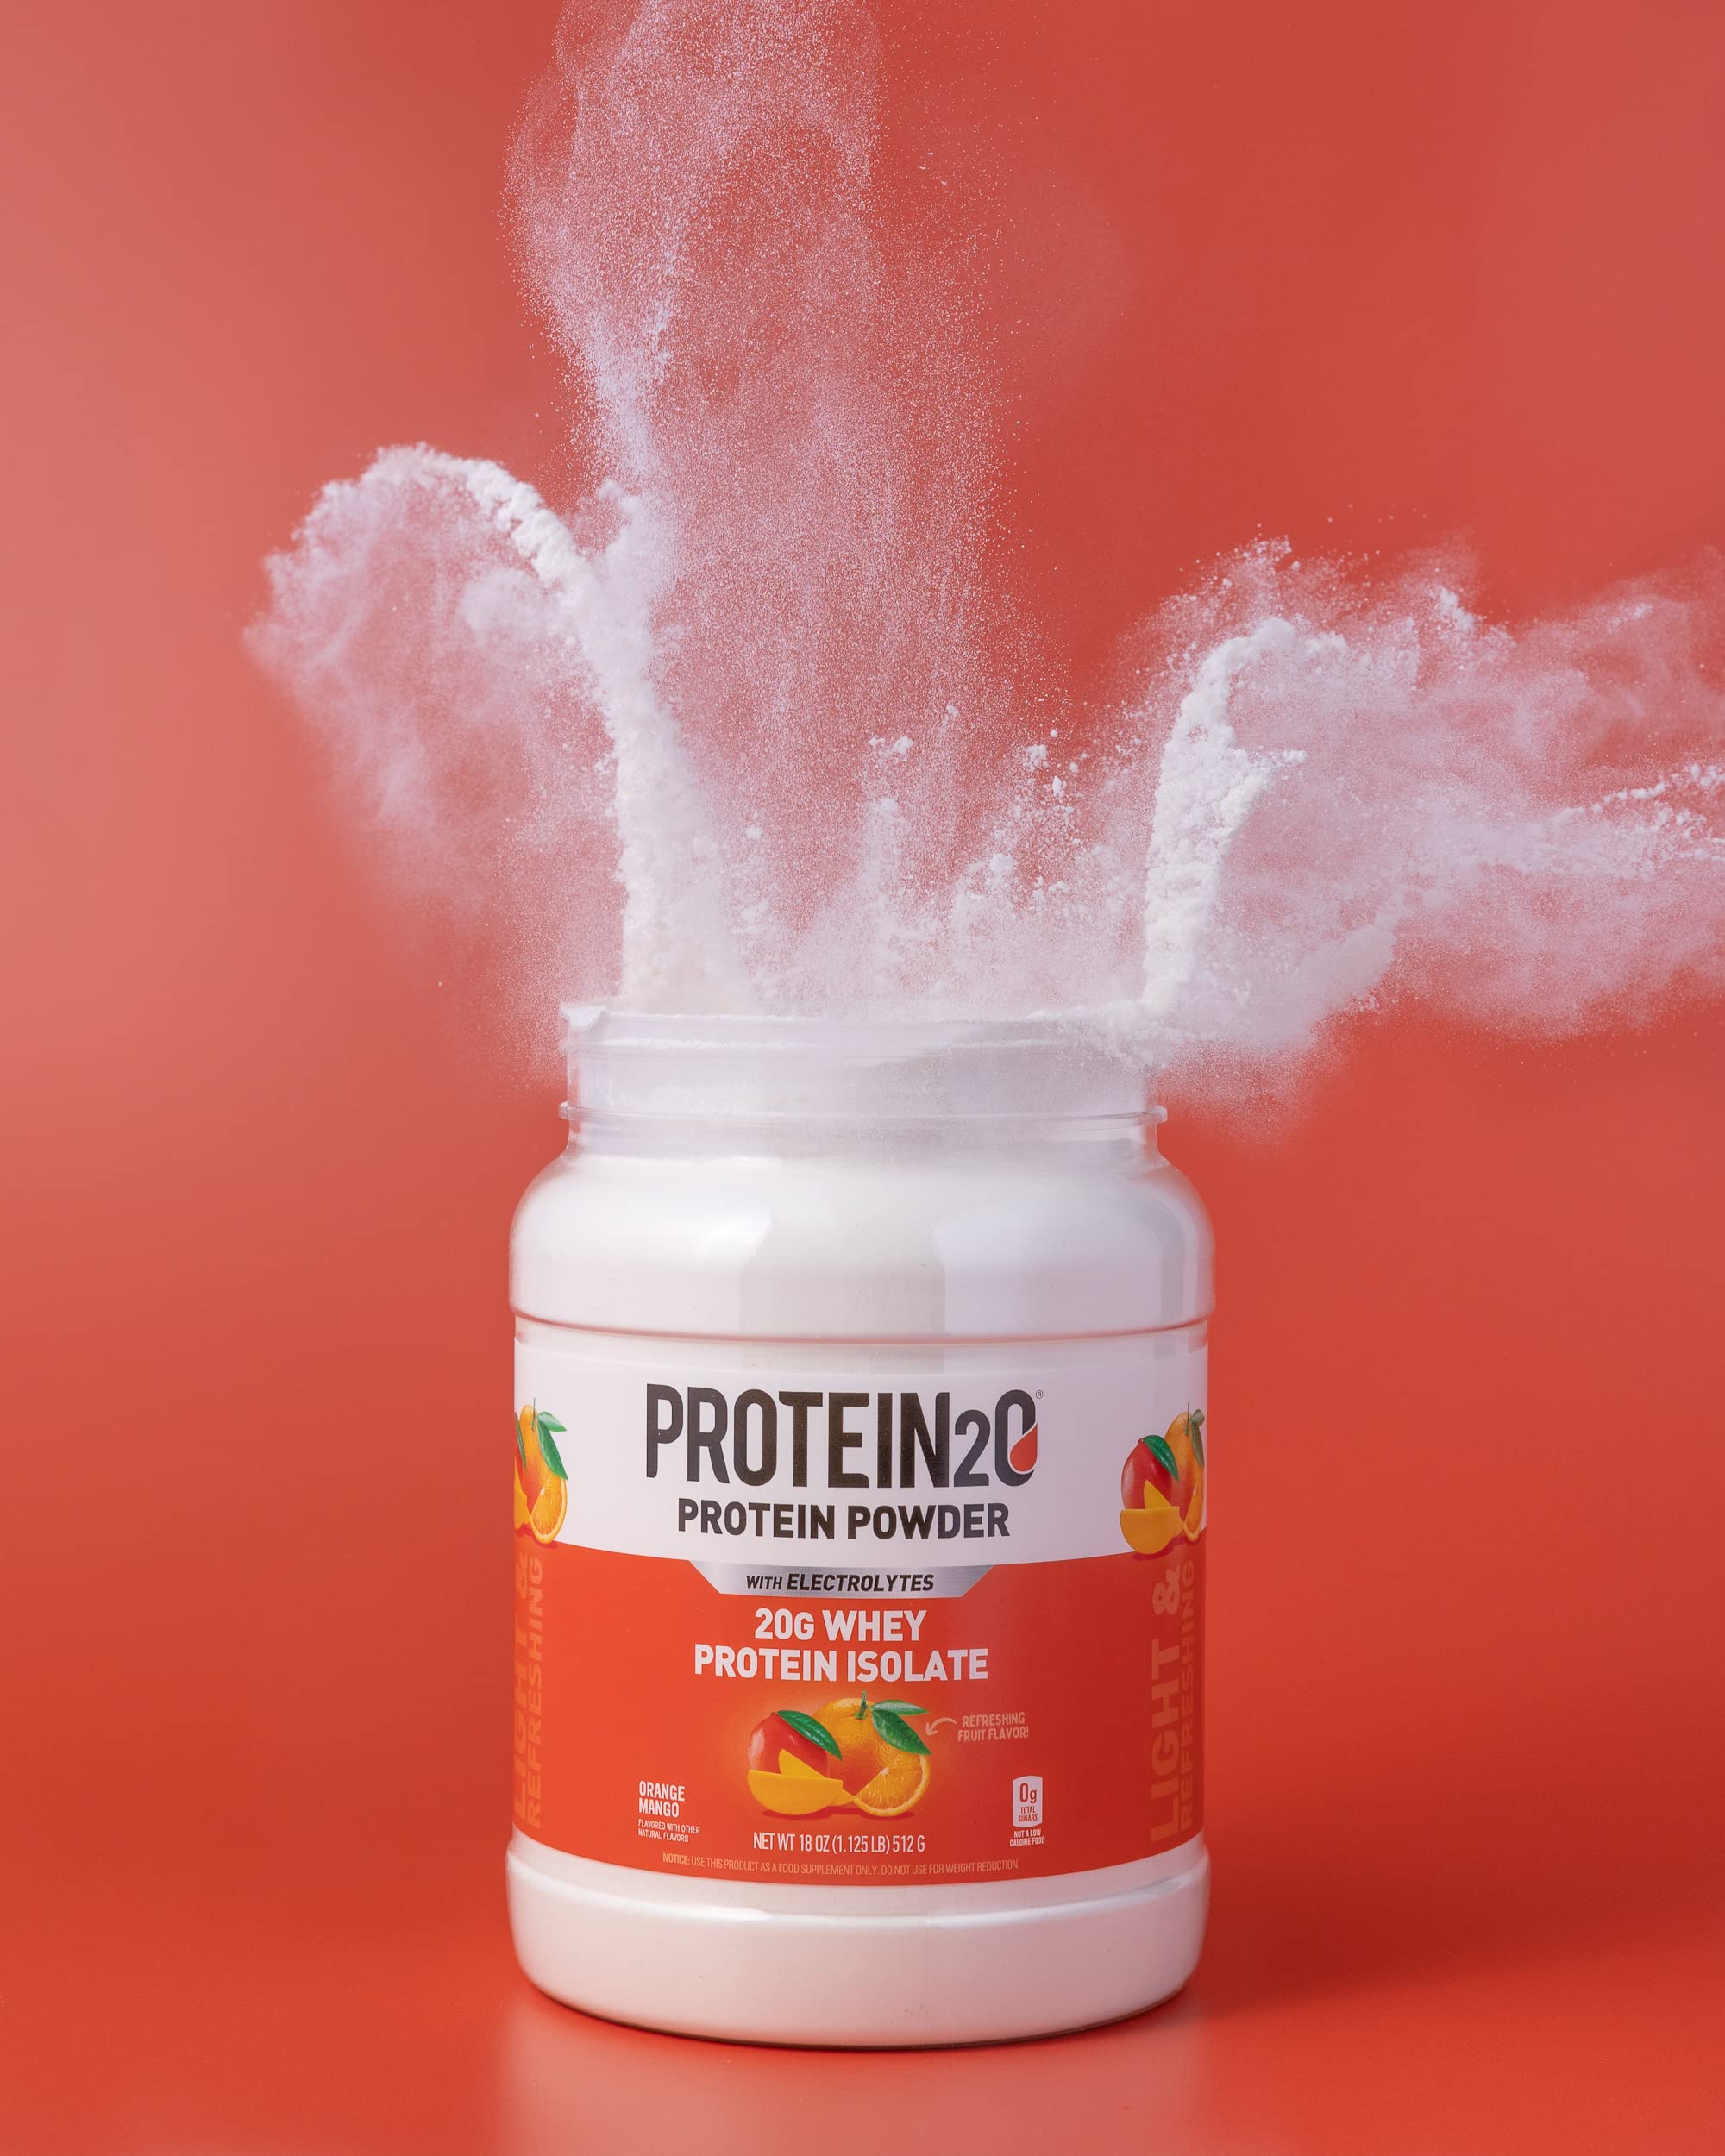 Protein2o 20g Whey Protein Isolate Powder Tub, Low Carbs, Sugar Free, Plus Electrolytes, Orange Mango, 16 Servings, 1.4 pounds